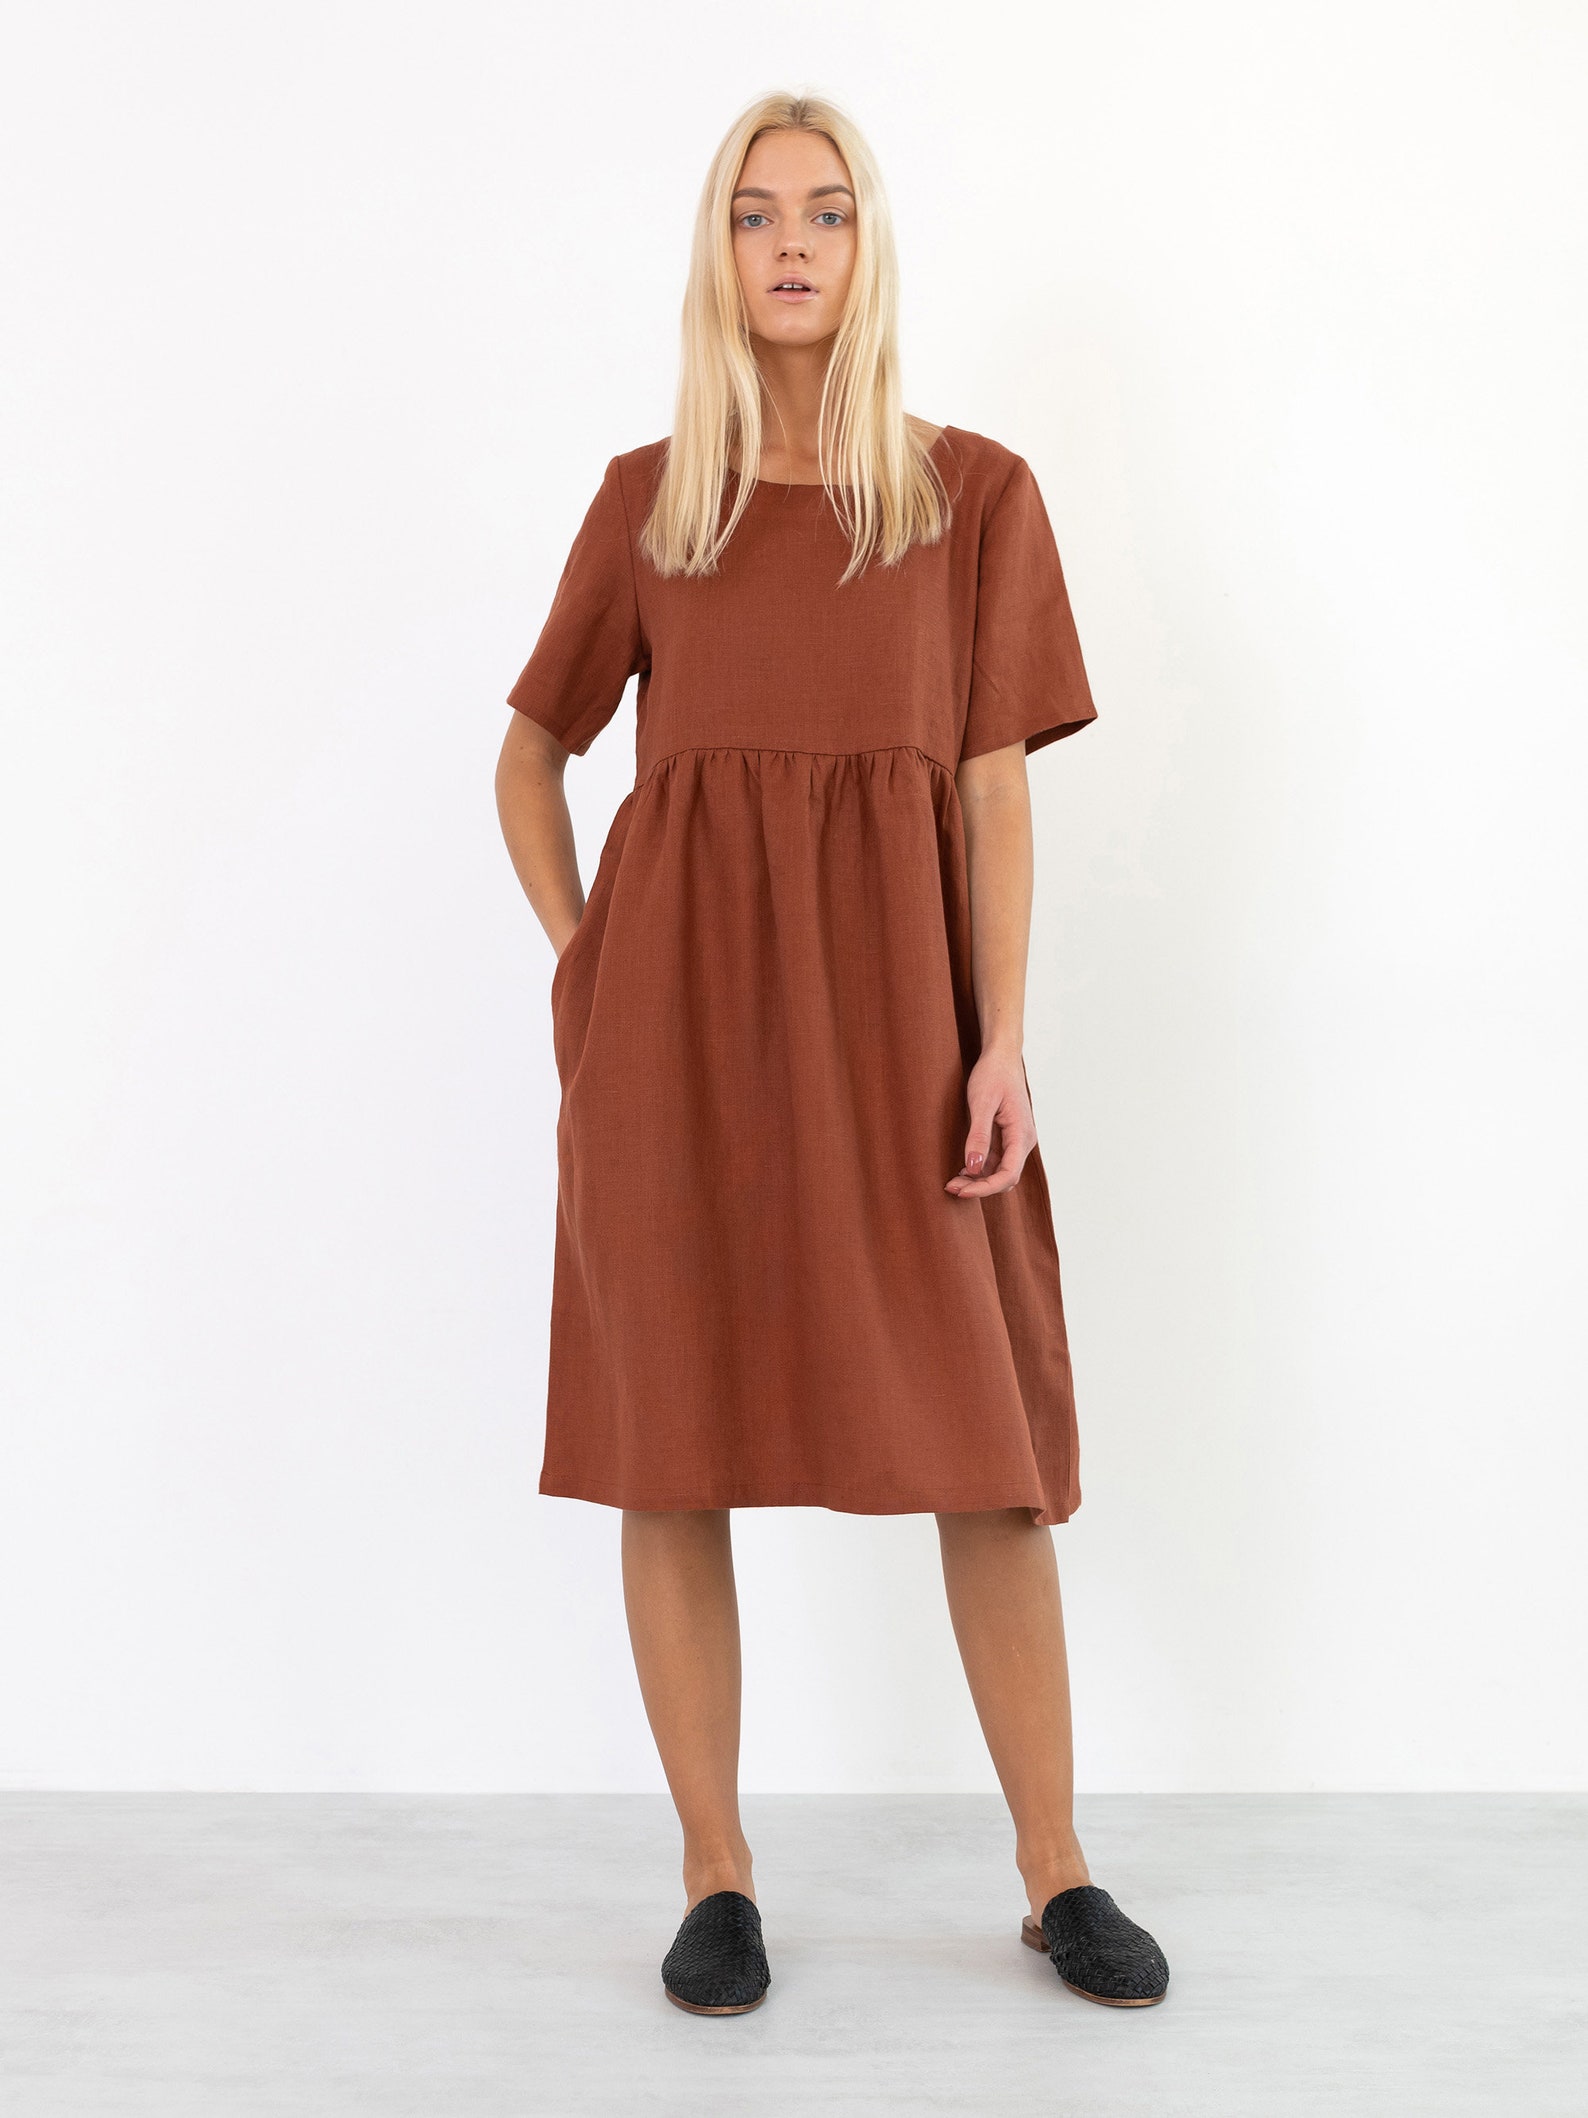 MATILDA Linen Dress / Midi Summer Dress / Short Sleeve Simple | Etsy